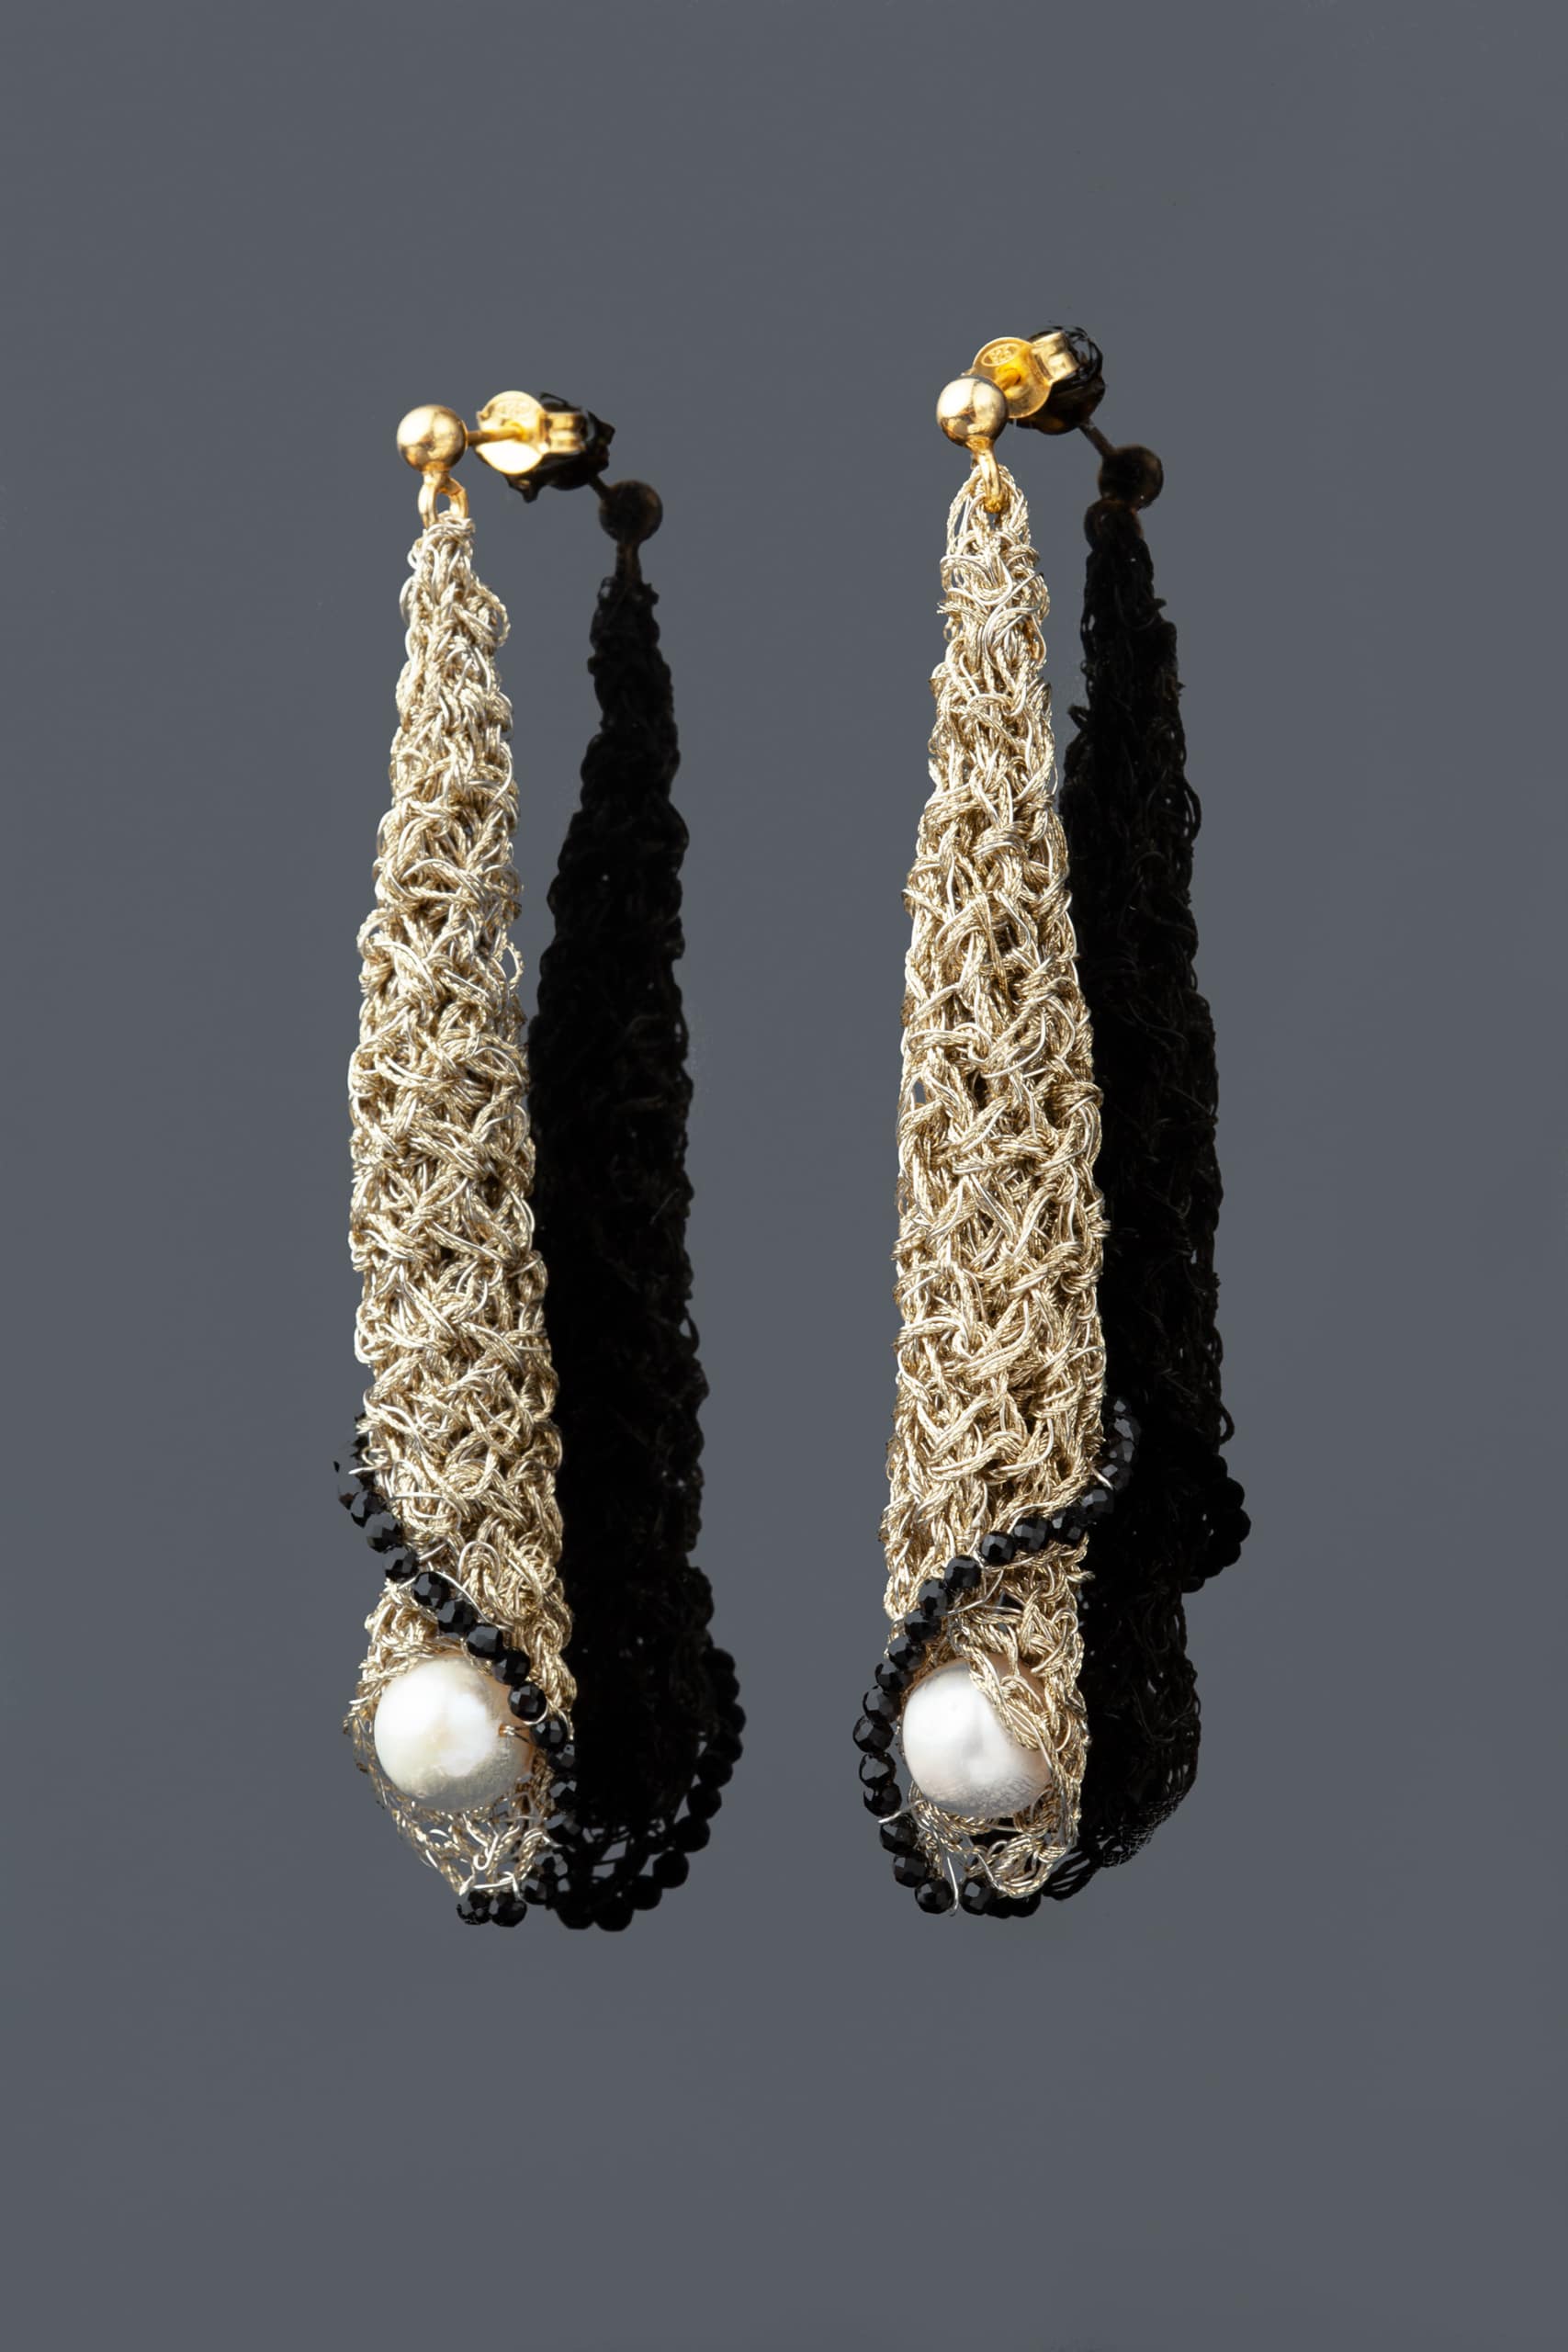 Πλεκτά ασημένια σκουλαρίκια με χρυσόνημα, σπινέλιο και μαργαριτάρια main